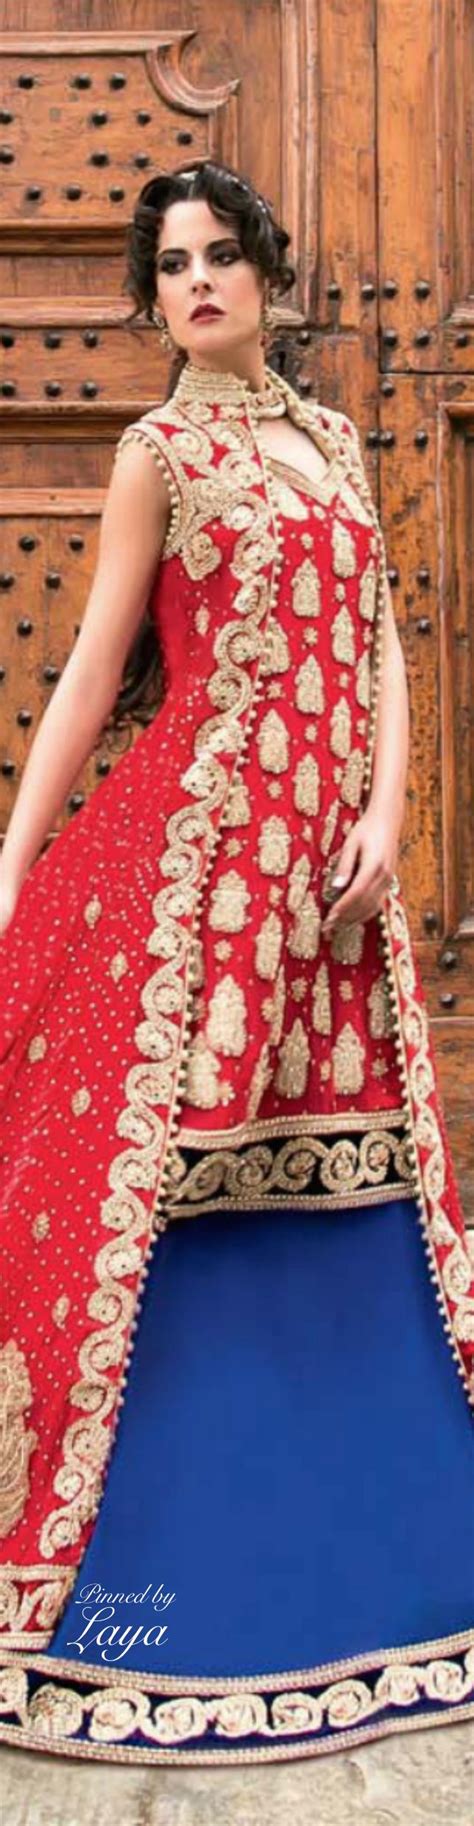 17 best images about beautiful indian and pakistani fashion on pinterest bridal lehenga indian